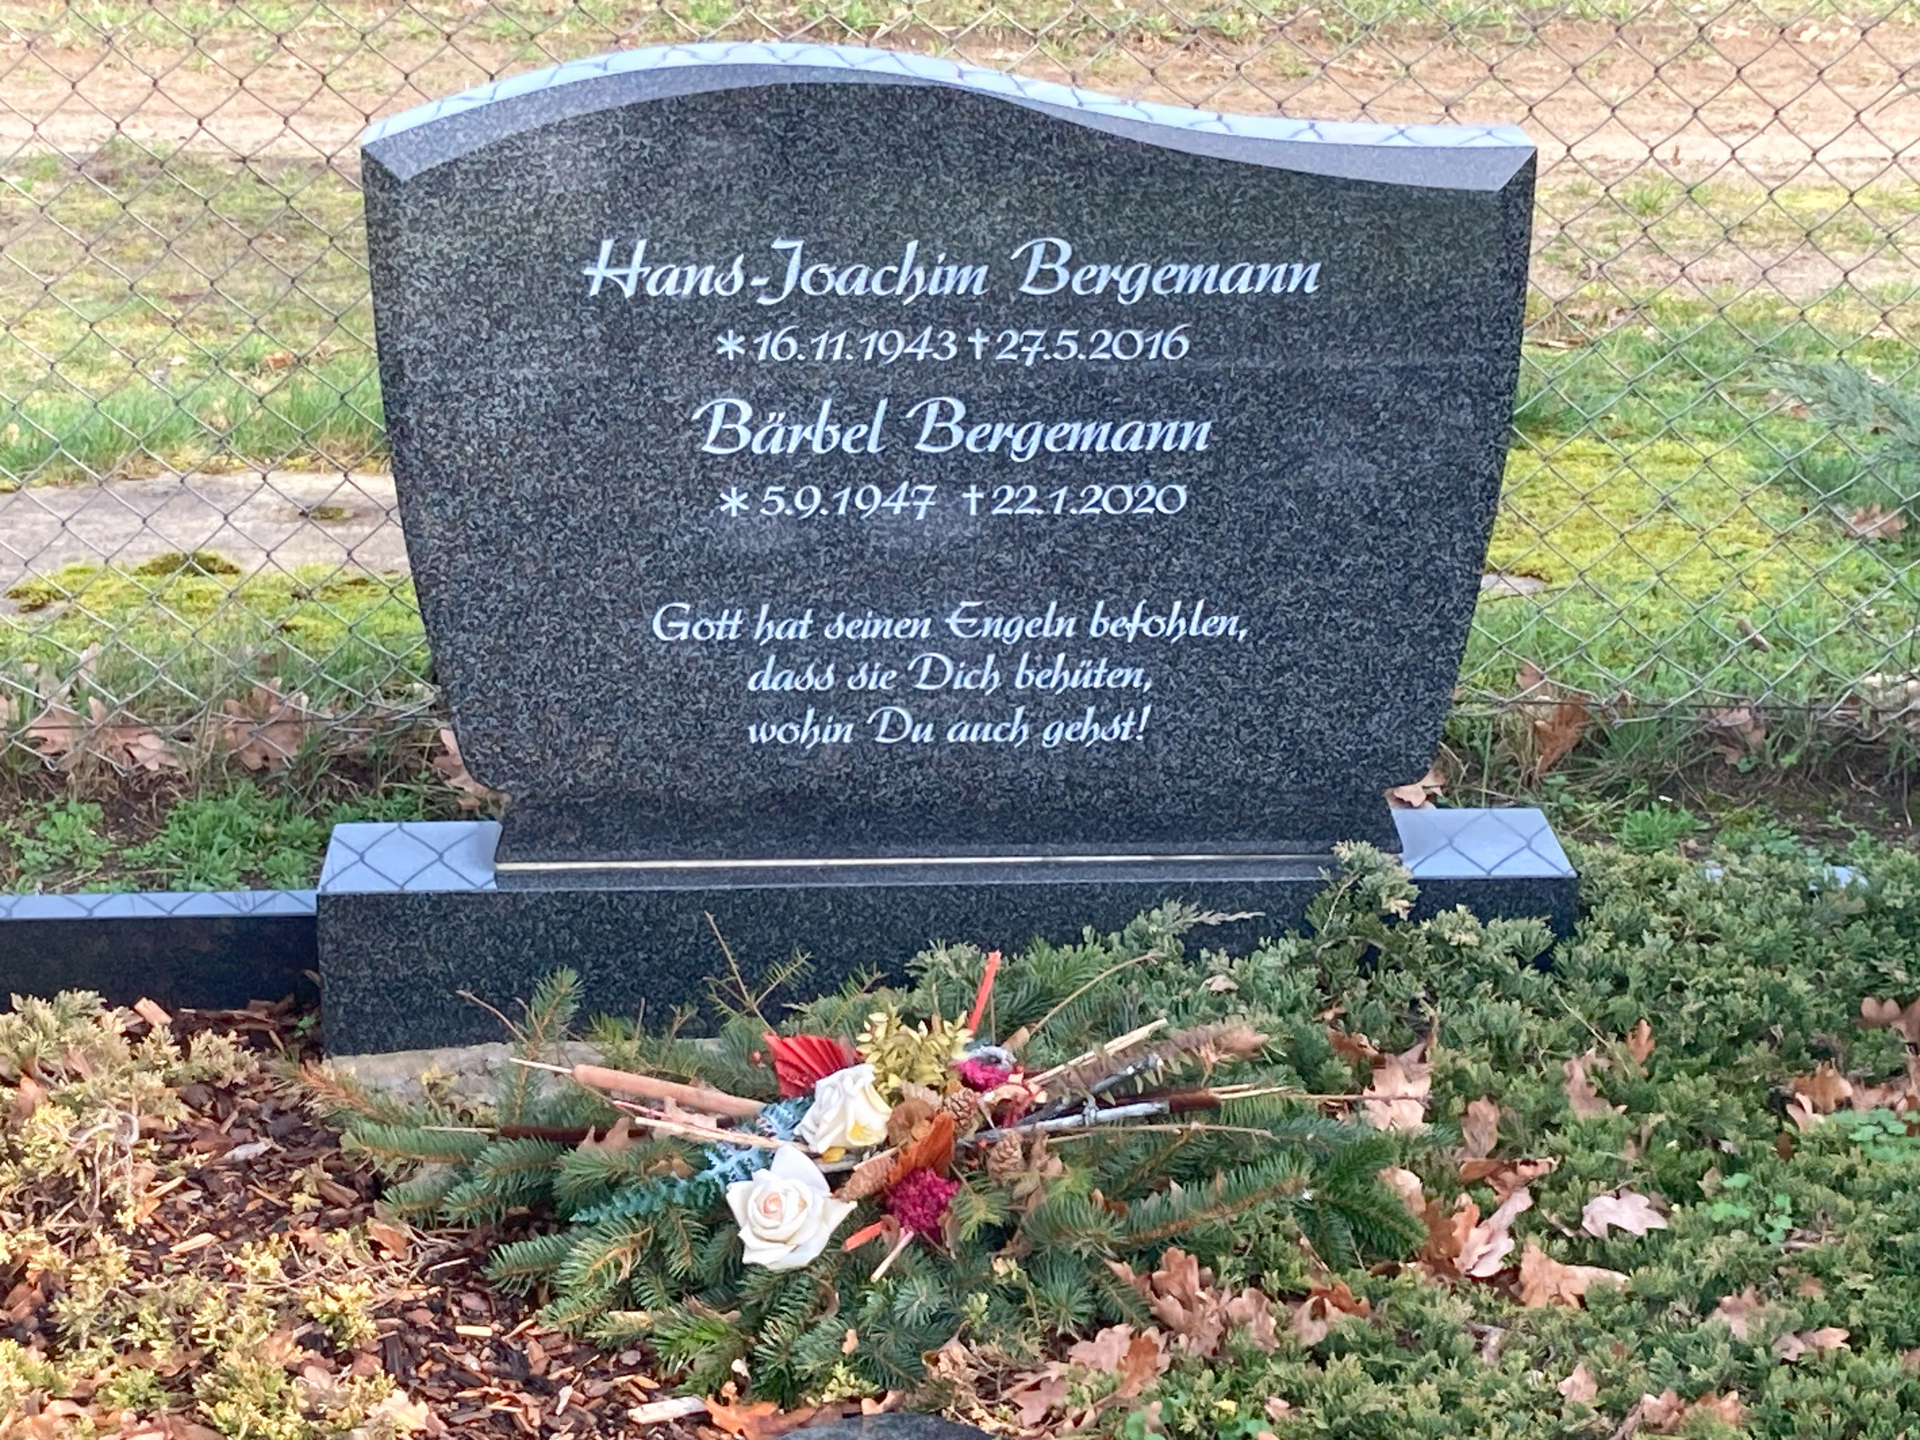 Grabstelle des Ehepaares Bergemann auf den Lüdersdorfer Friedhof